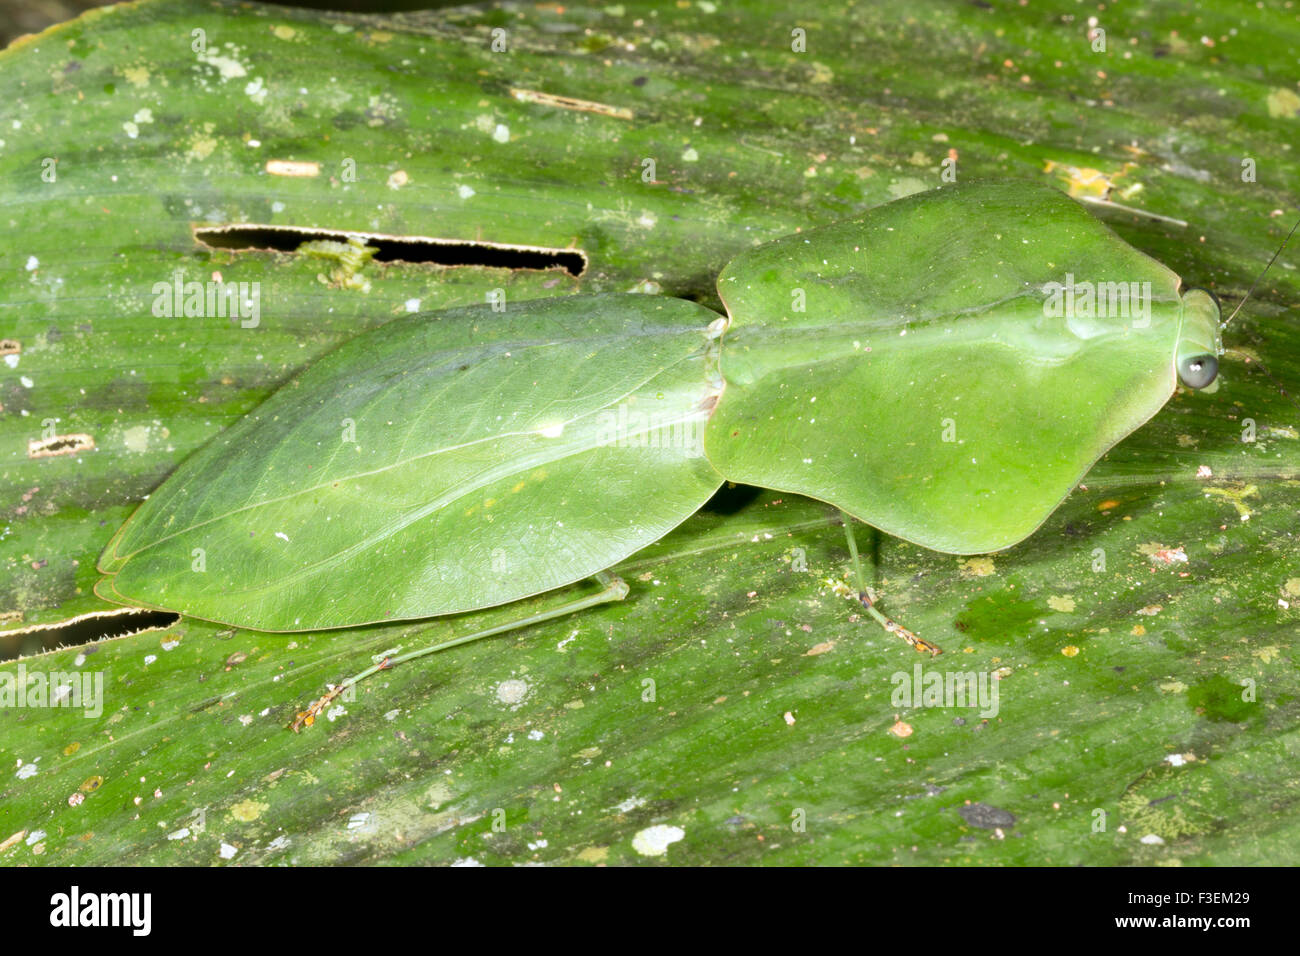 Erwachsenen Leaf nachahmen Mantis (Choeradodis Rhomboidea) getarnt auf einem Blatt Regenwald, Ecuador Stockfoto